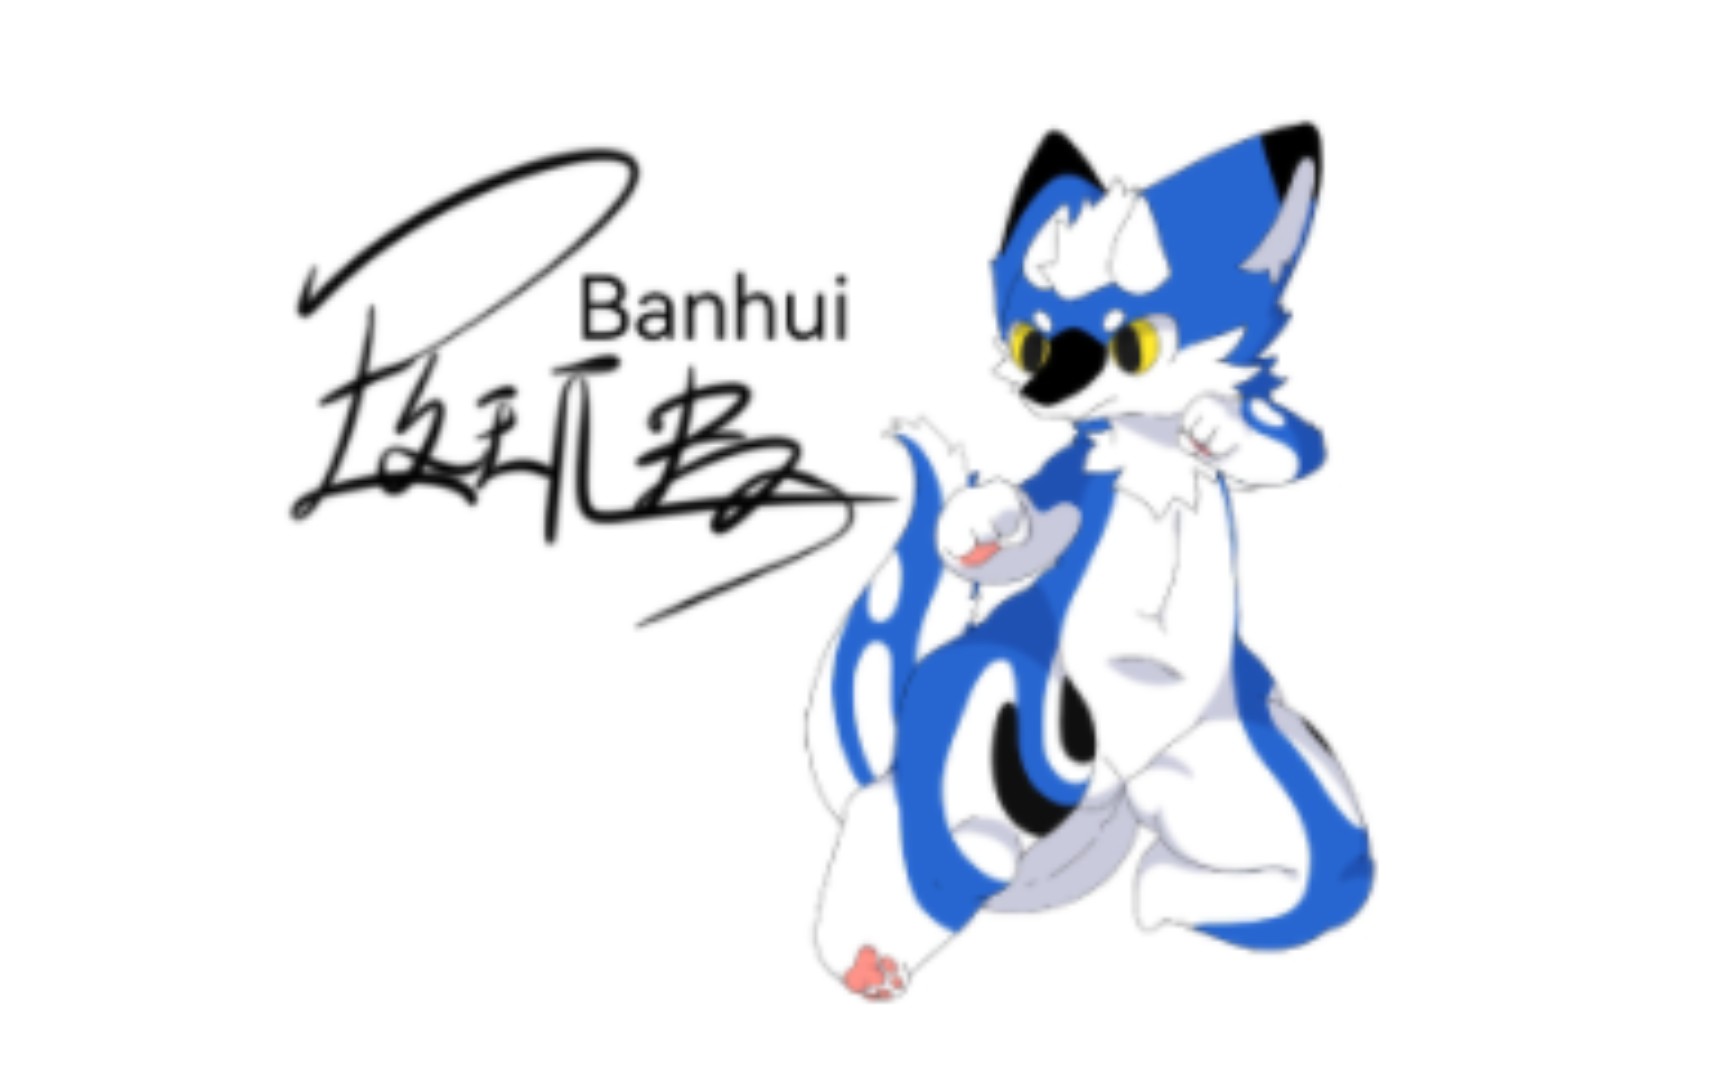 [图]Banhui 斑虺小蓝龙 各位给个三连支持下嗷 BE CAREFUL WITH THIS DRAGON!!!